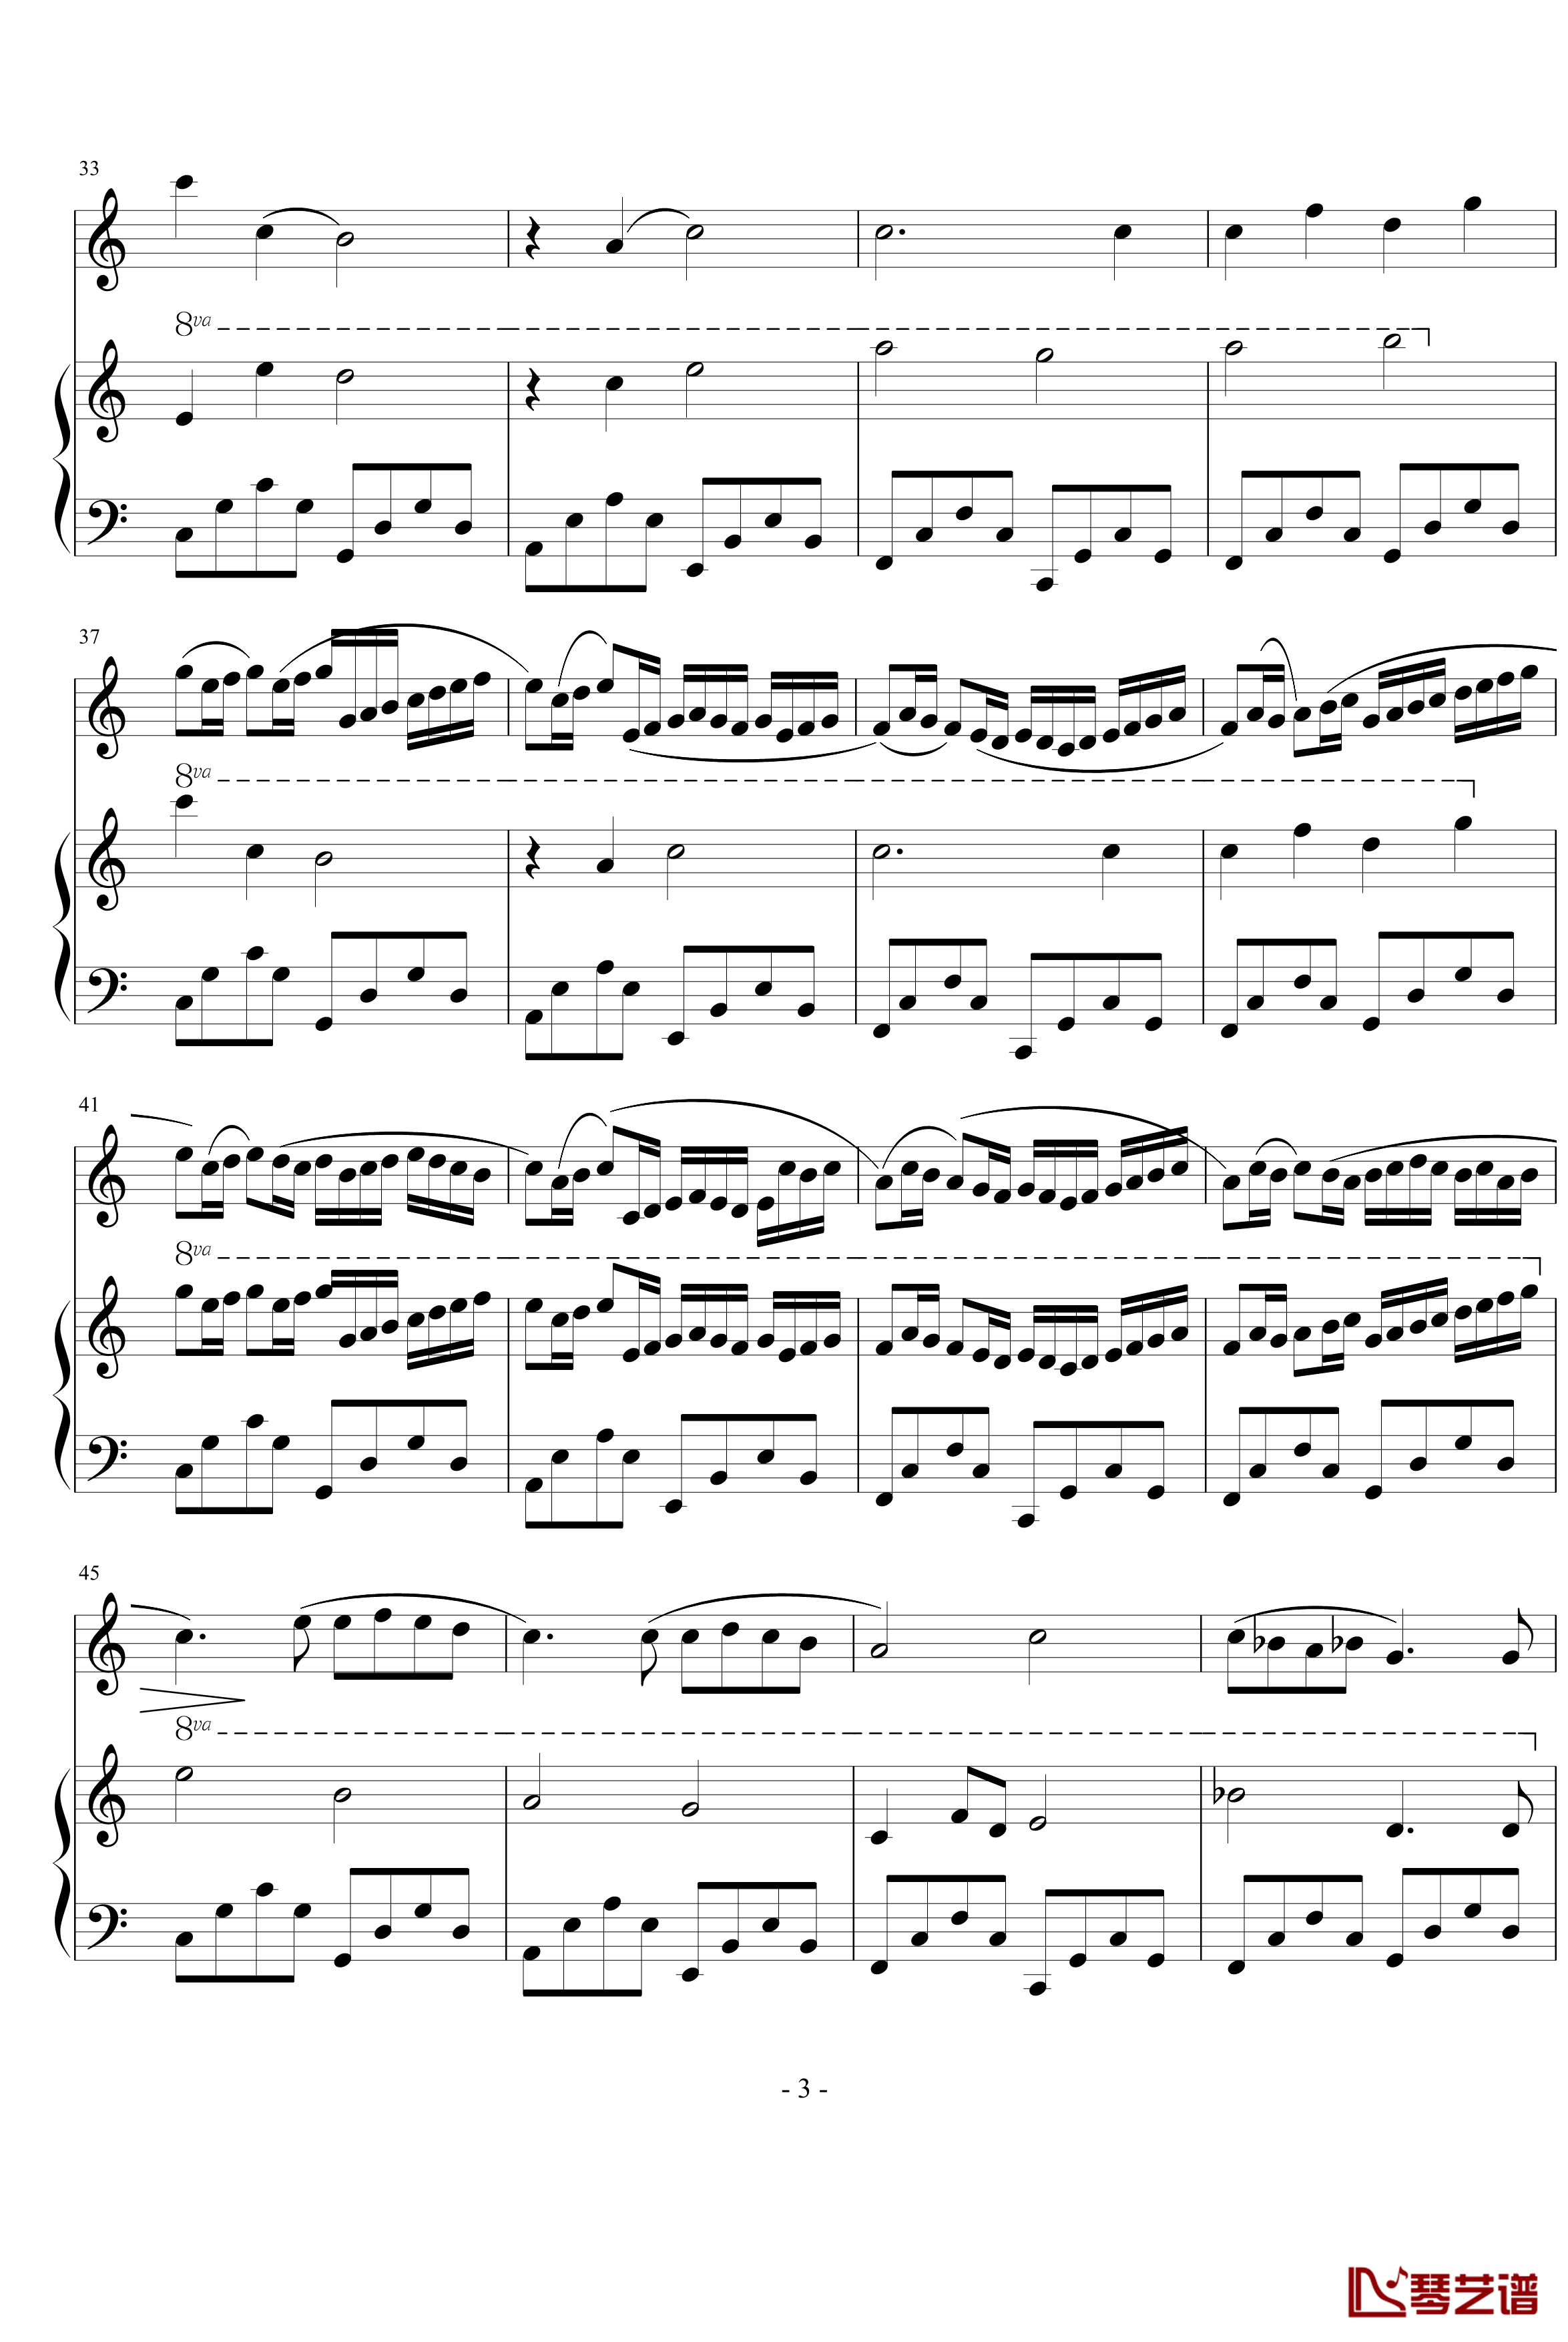 卡农小提琴+钢琴版钢琴谱-动画金色琴弦-帕赫贝尔-Pachelbel3